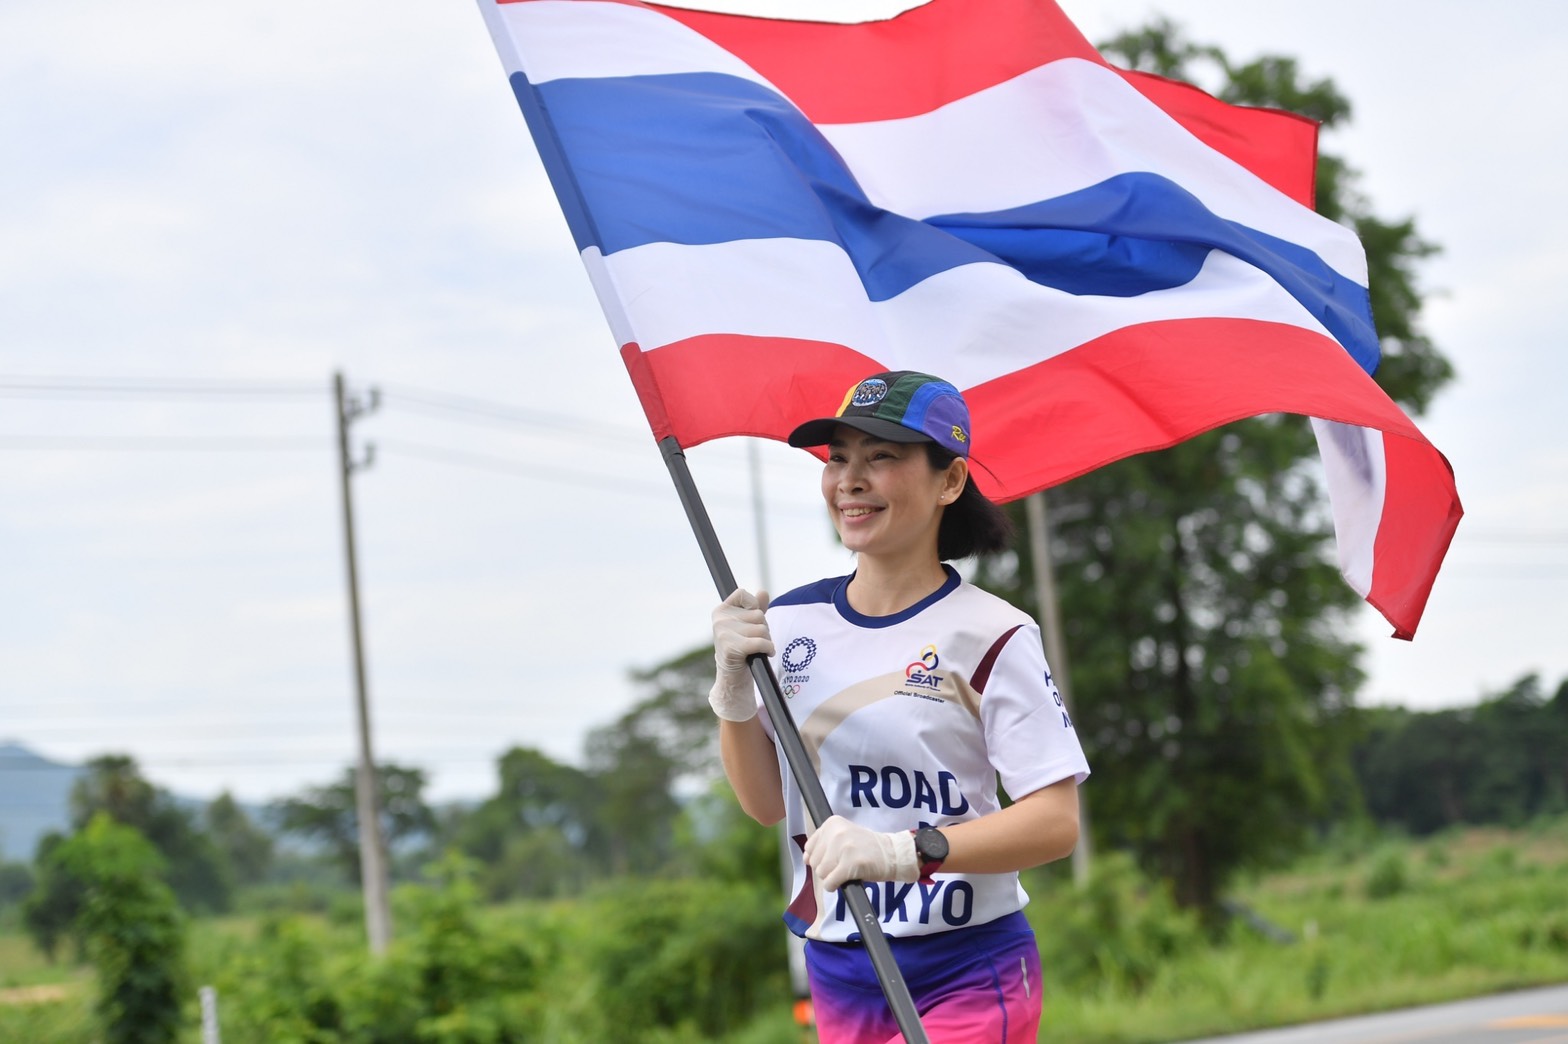 พ่อเมืองพิษณุโลก นำทีมวิ่งส่งกำลังใจทัพนักกีฬาไทย ไปชิงชัยโอลิมปิก